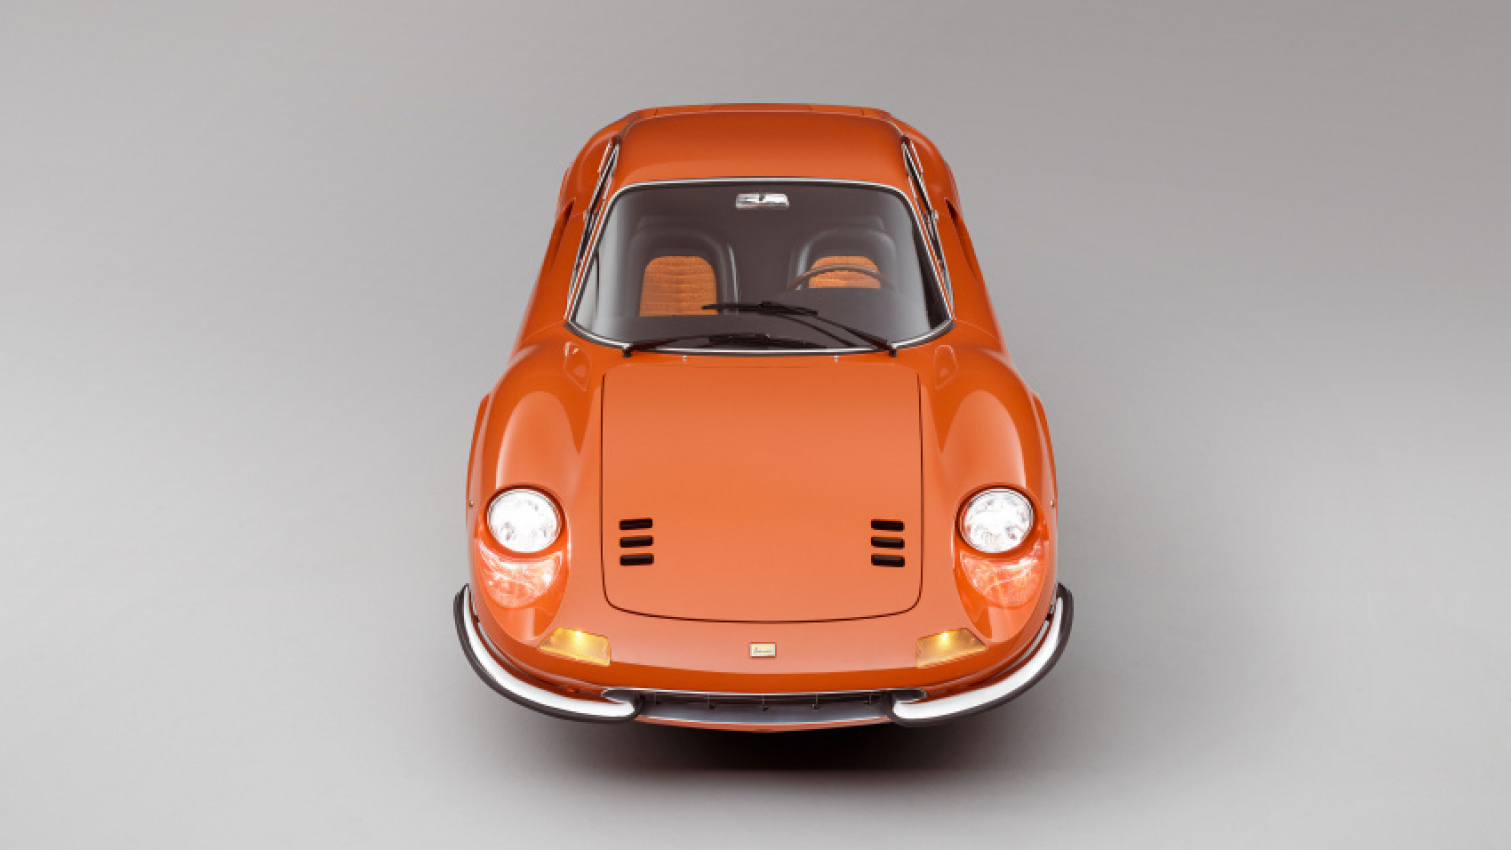 autos, cars, ferrari, retro, vnex, gaze upon this fully restored 1969 ferrari dino 246 gt